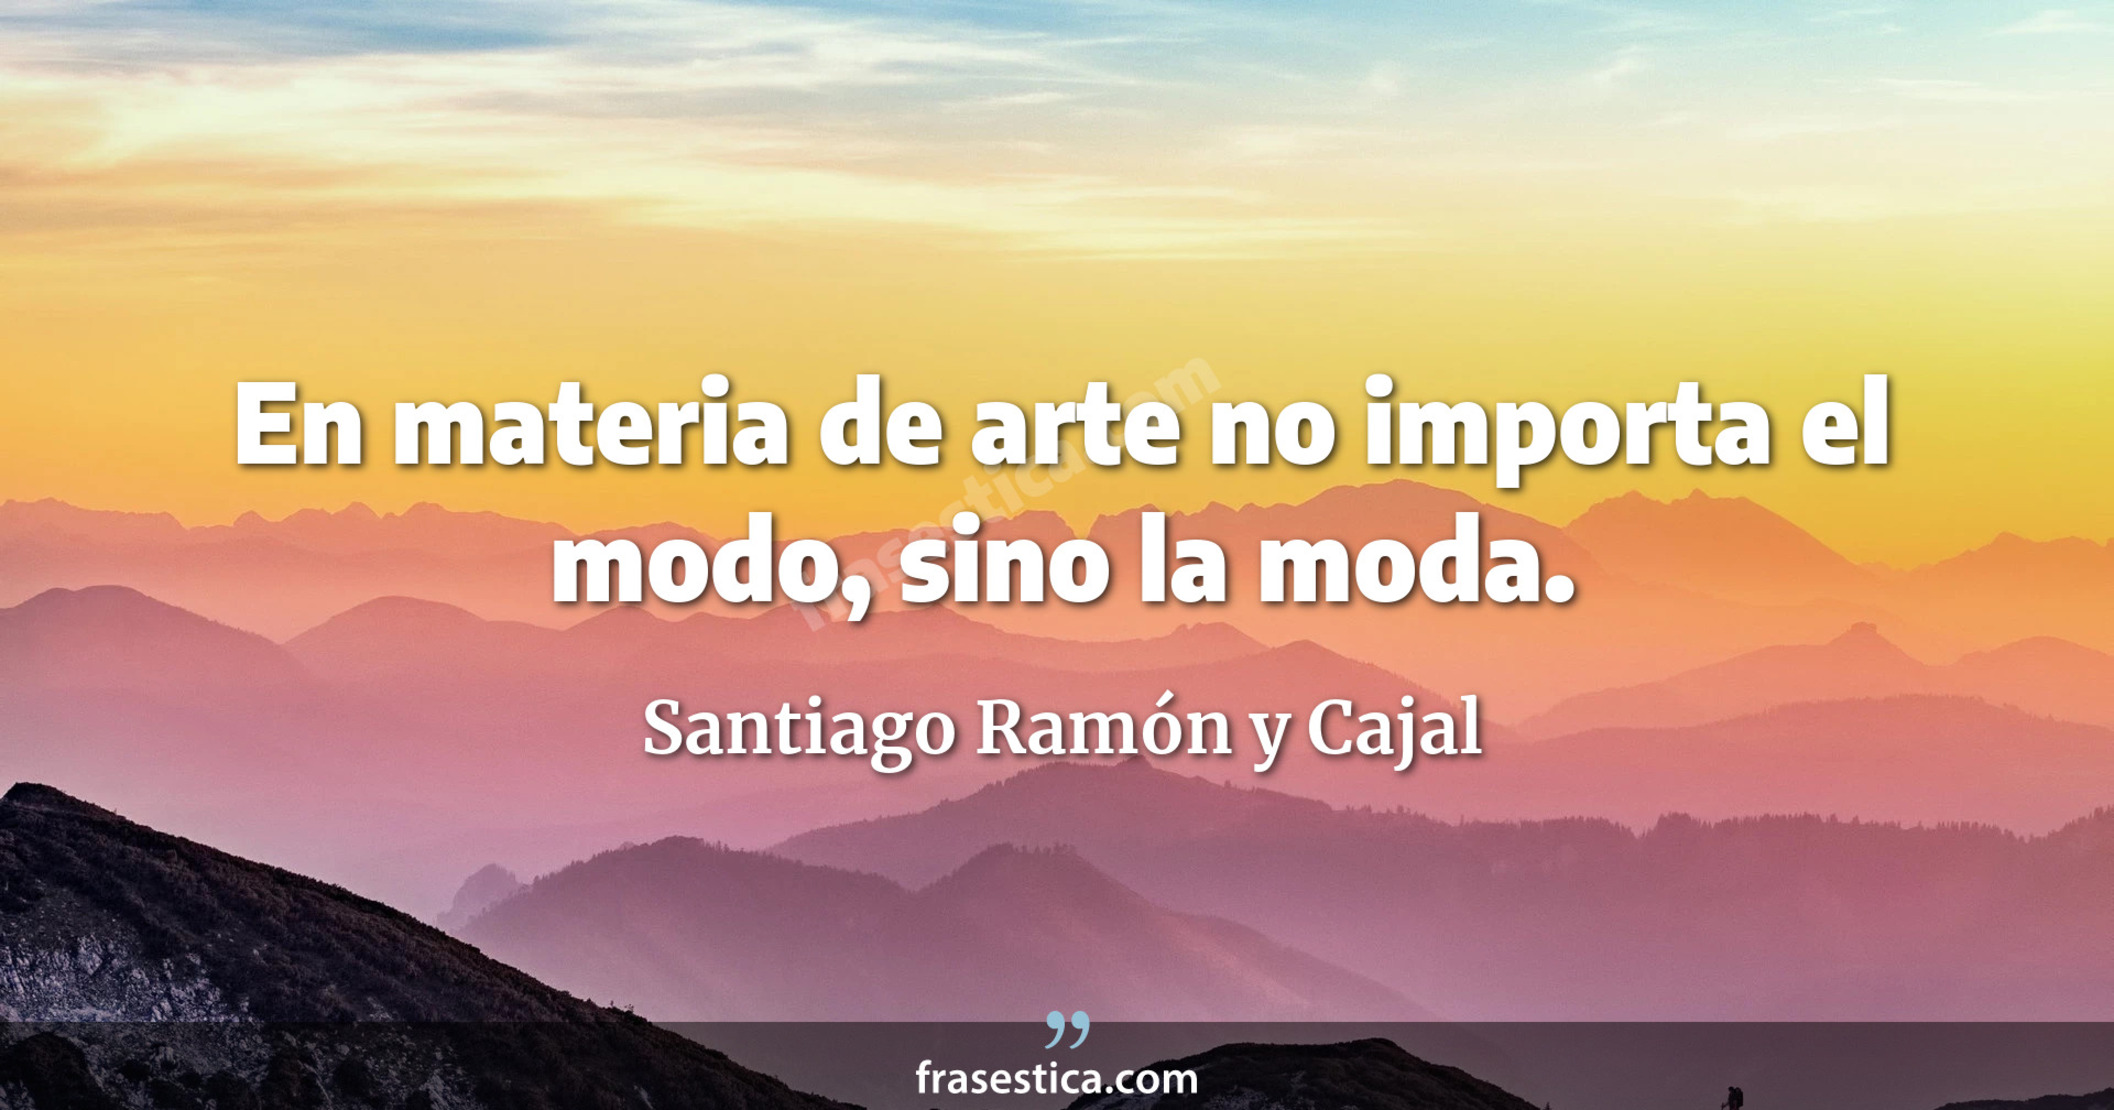 En materia de arte no importa el modo, sino la moda. - Santiago Ramón y Cajal